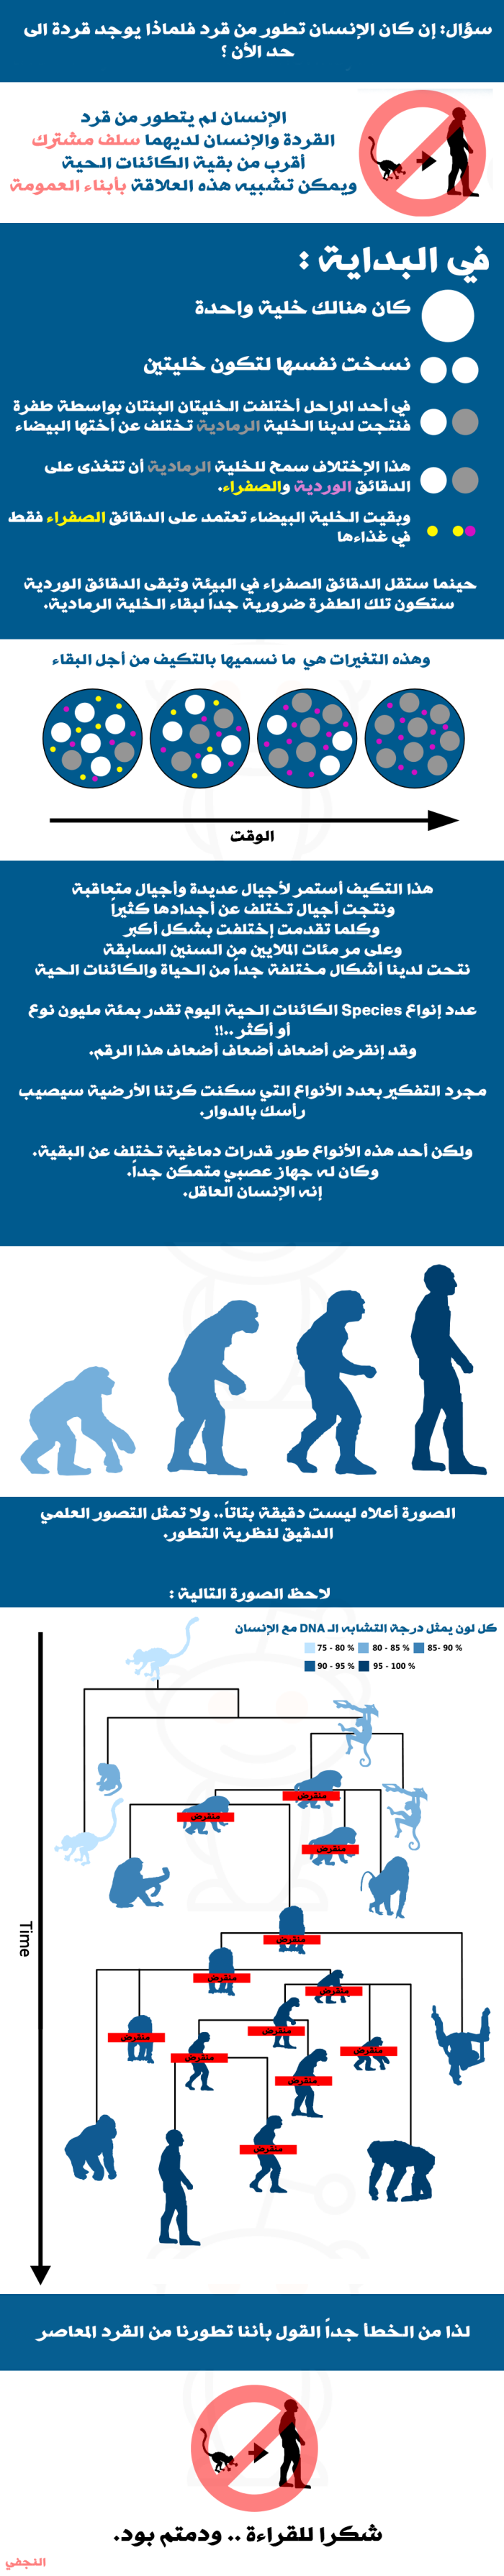 تطور القرد الى انسان